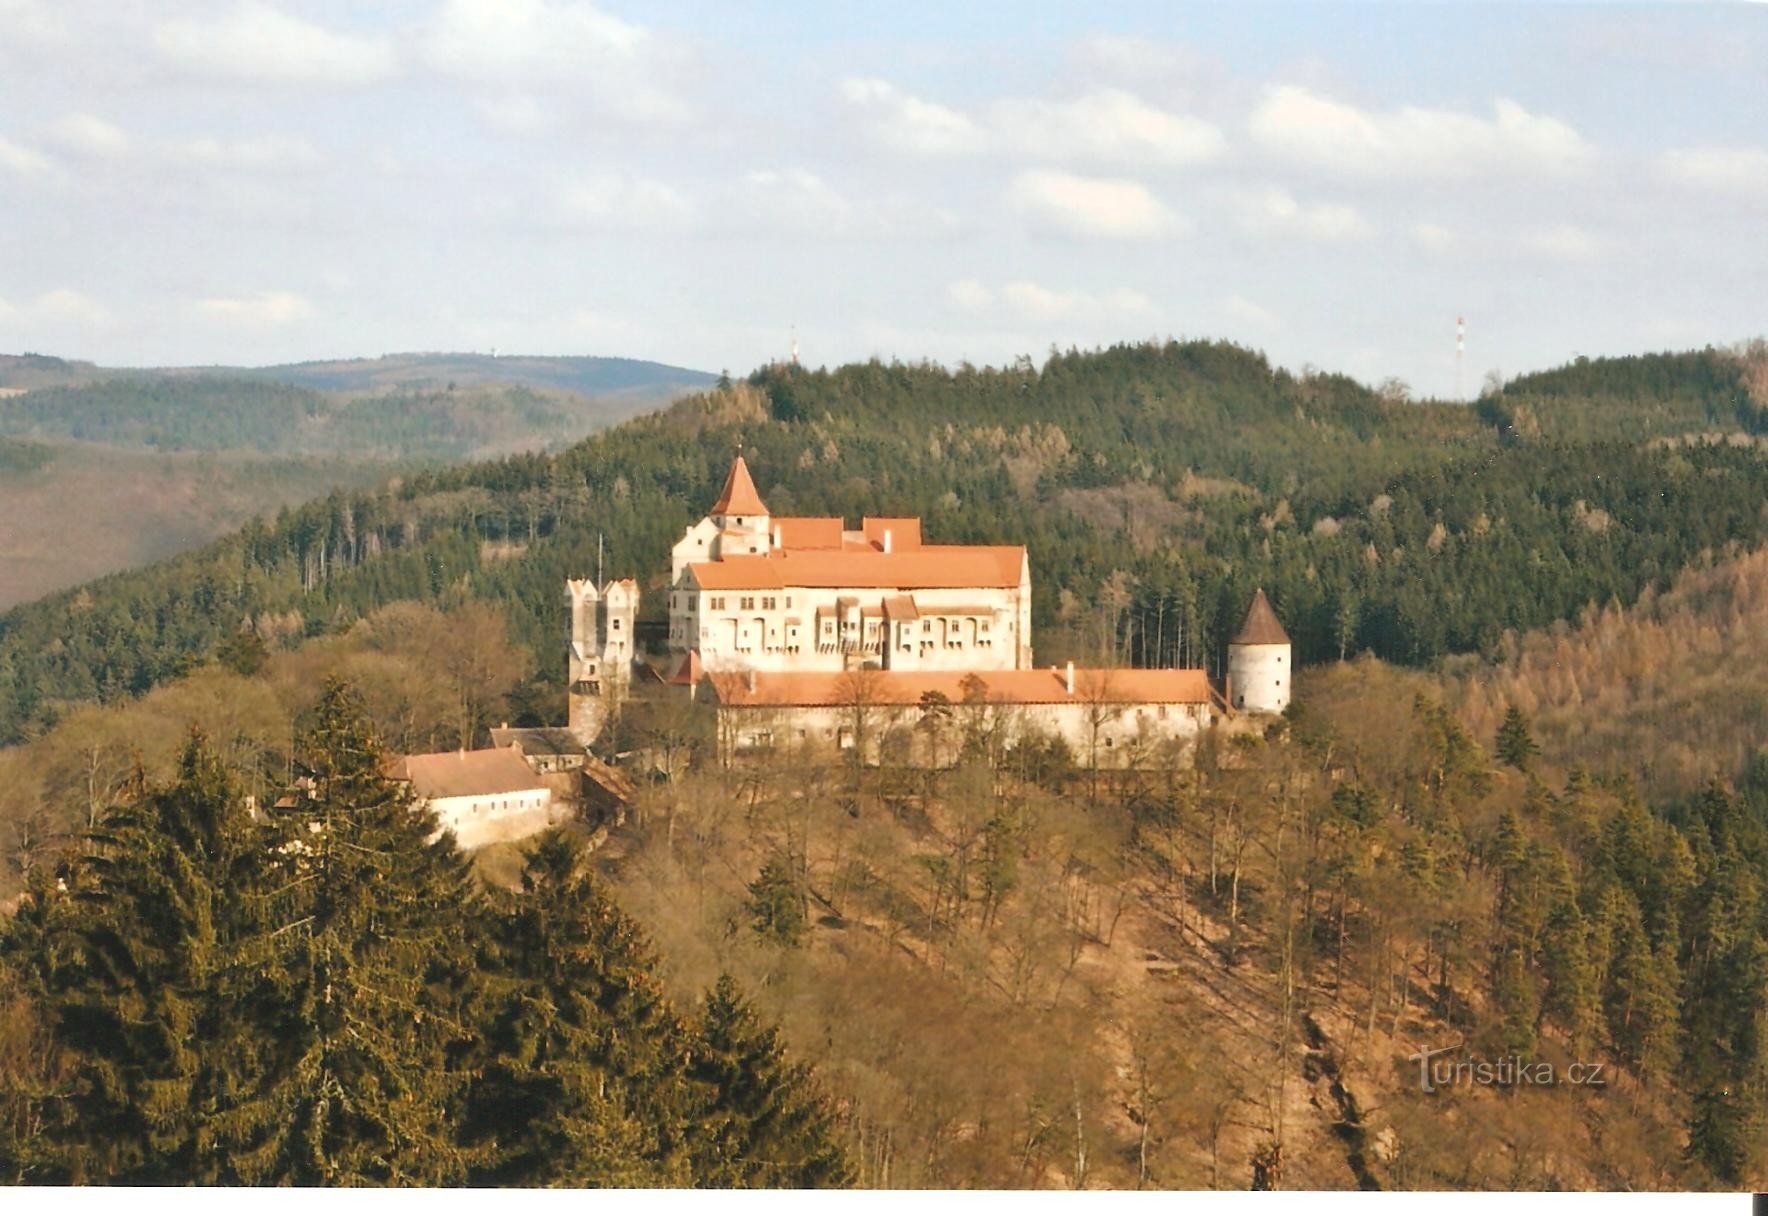 Marenčino loubí - vue du château de Pernštejn à la fin de l'automne 2008